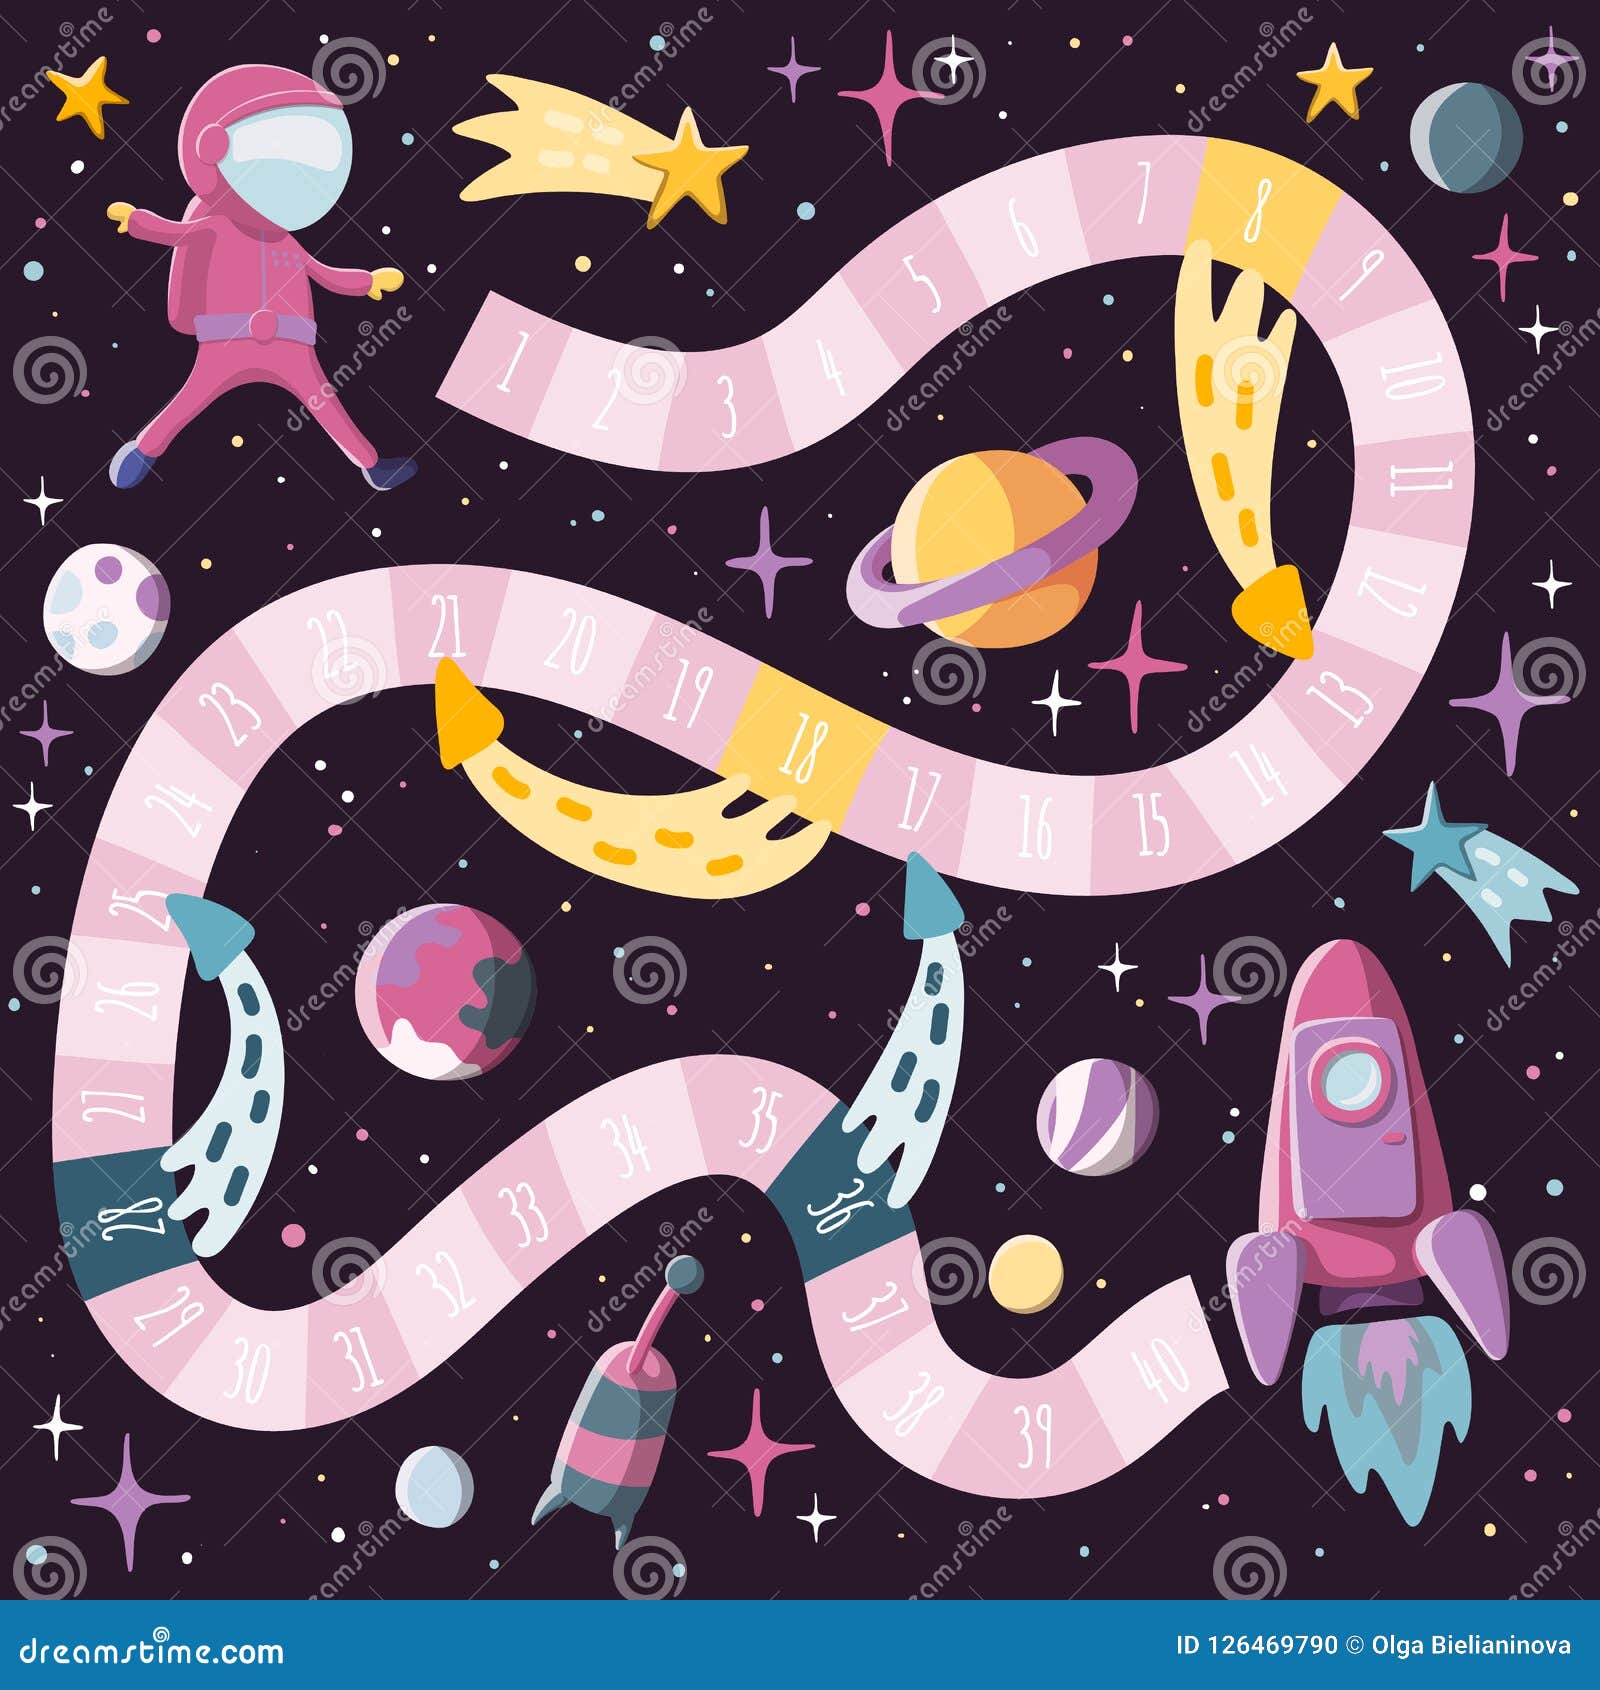 Karikaturart scherzt Wissenschafts- und RaumBrettspiel mit Astronauten, Rakete, planents, Sputnik Schablonendesign